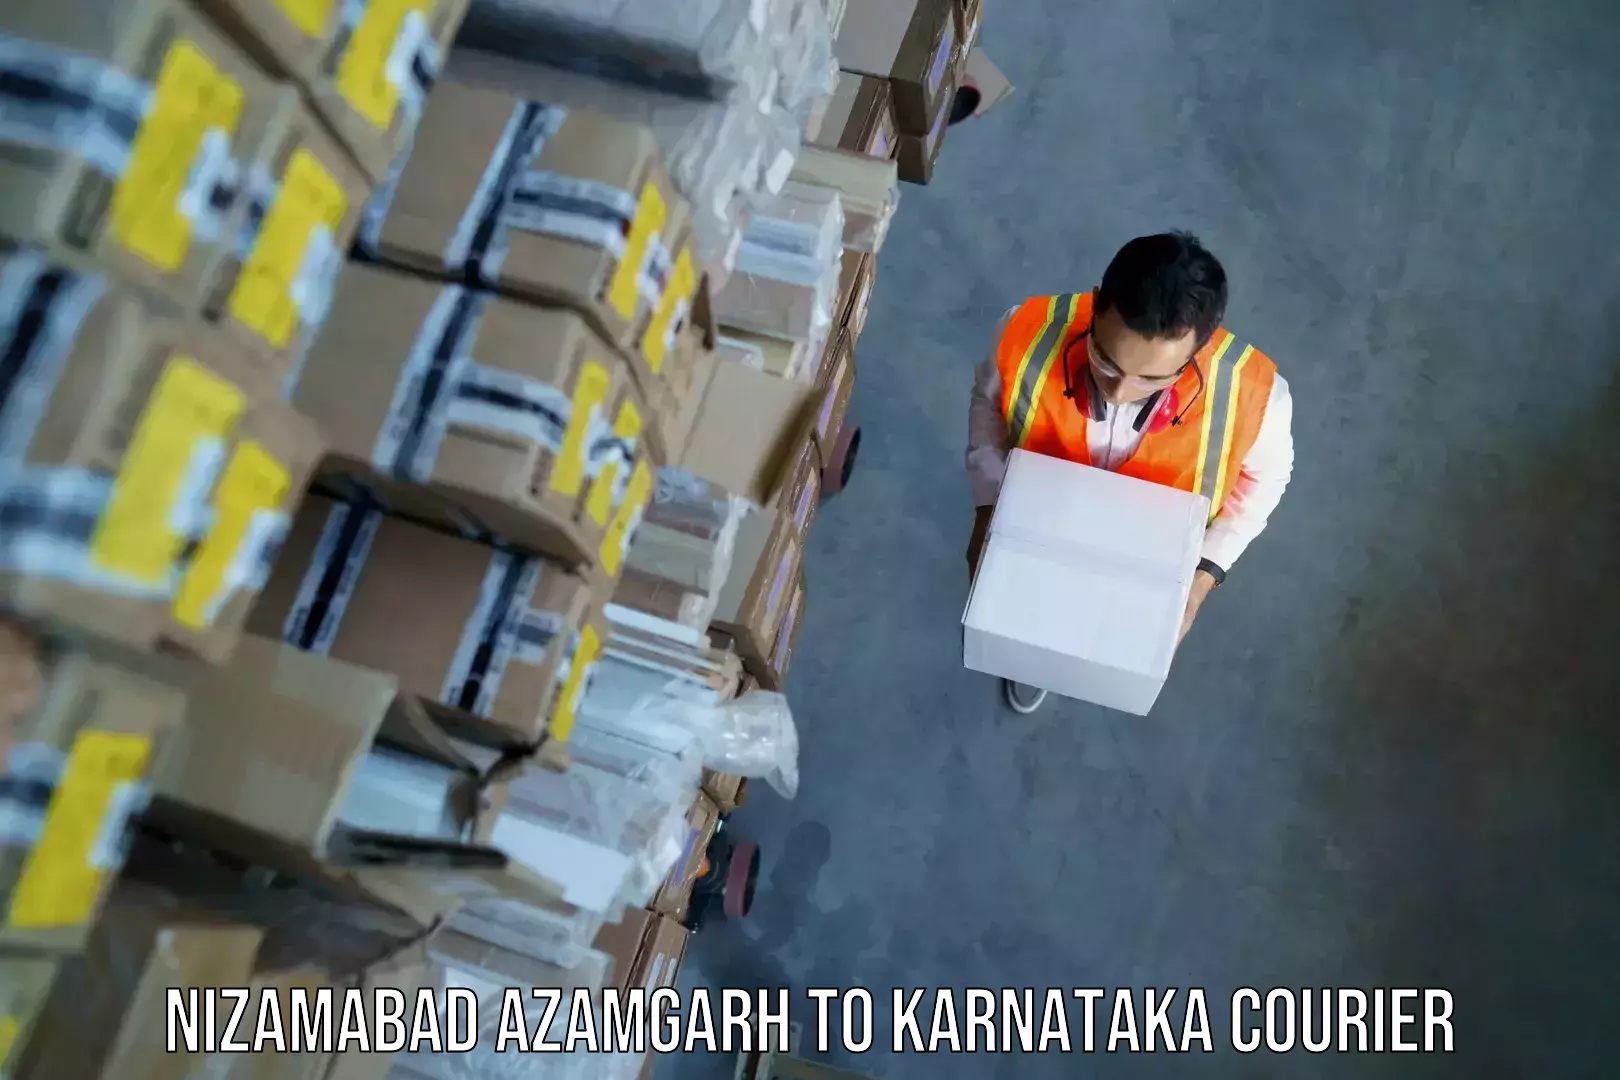 Luggage courier network Nizamabad Azamgarh to Karnataka